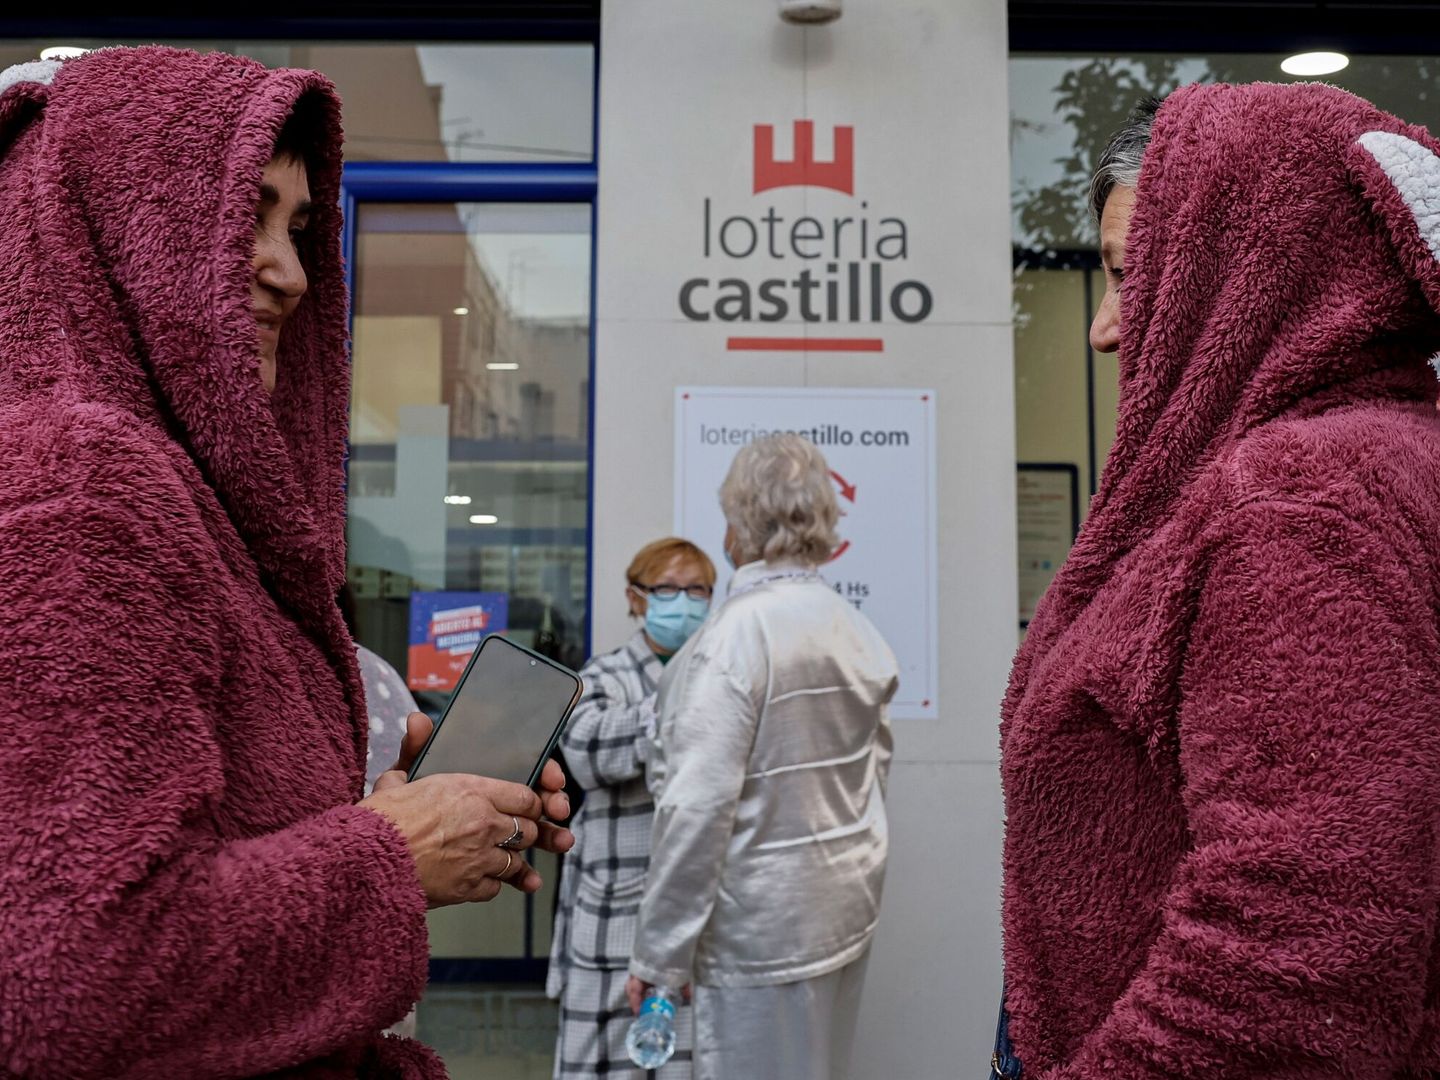 Lotería castillo regaló décimos de Navidad a los 50 primeros clientes que llegasen en pijama (EFE/Biel Aliño)